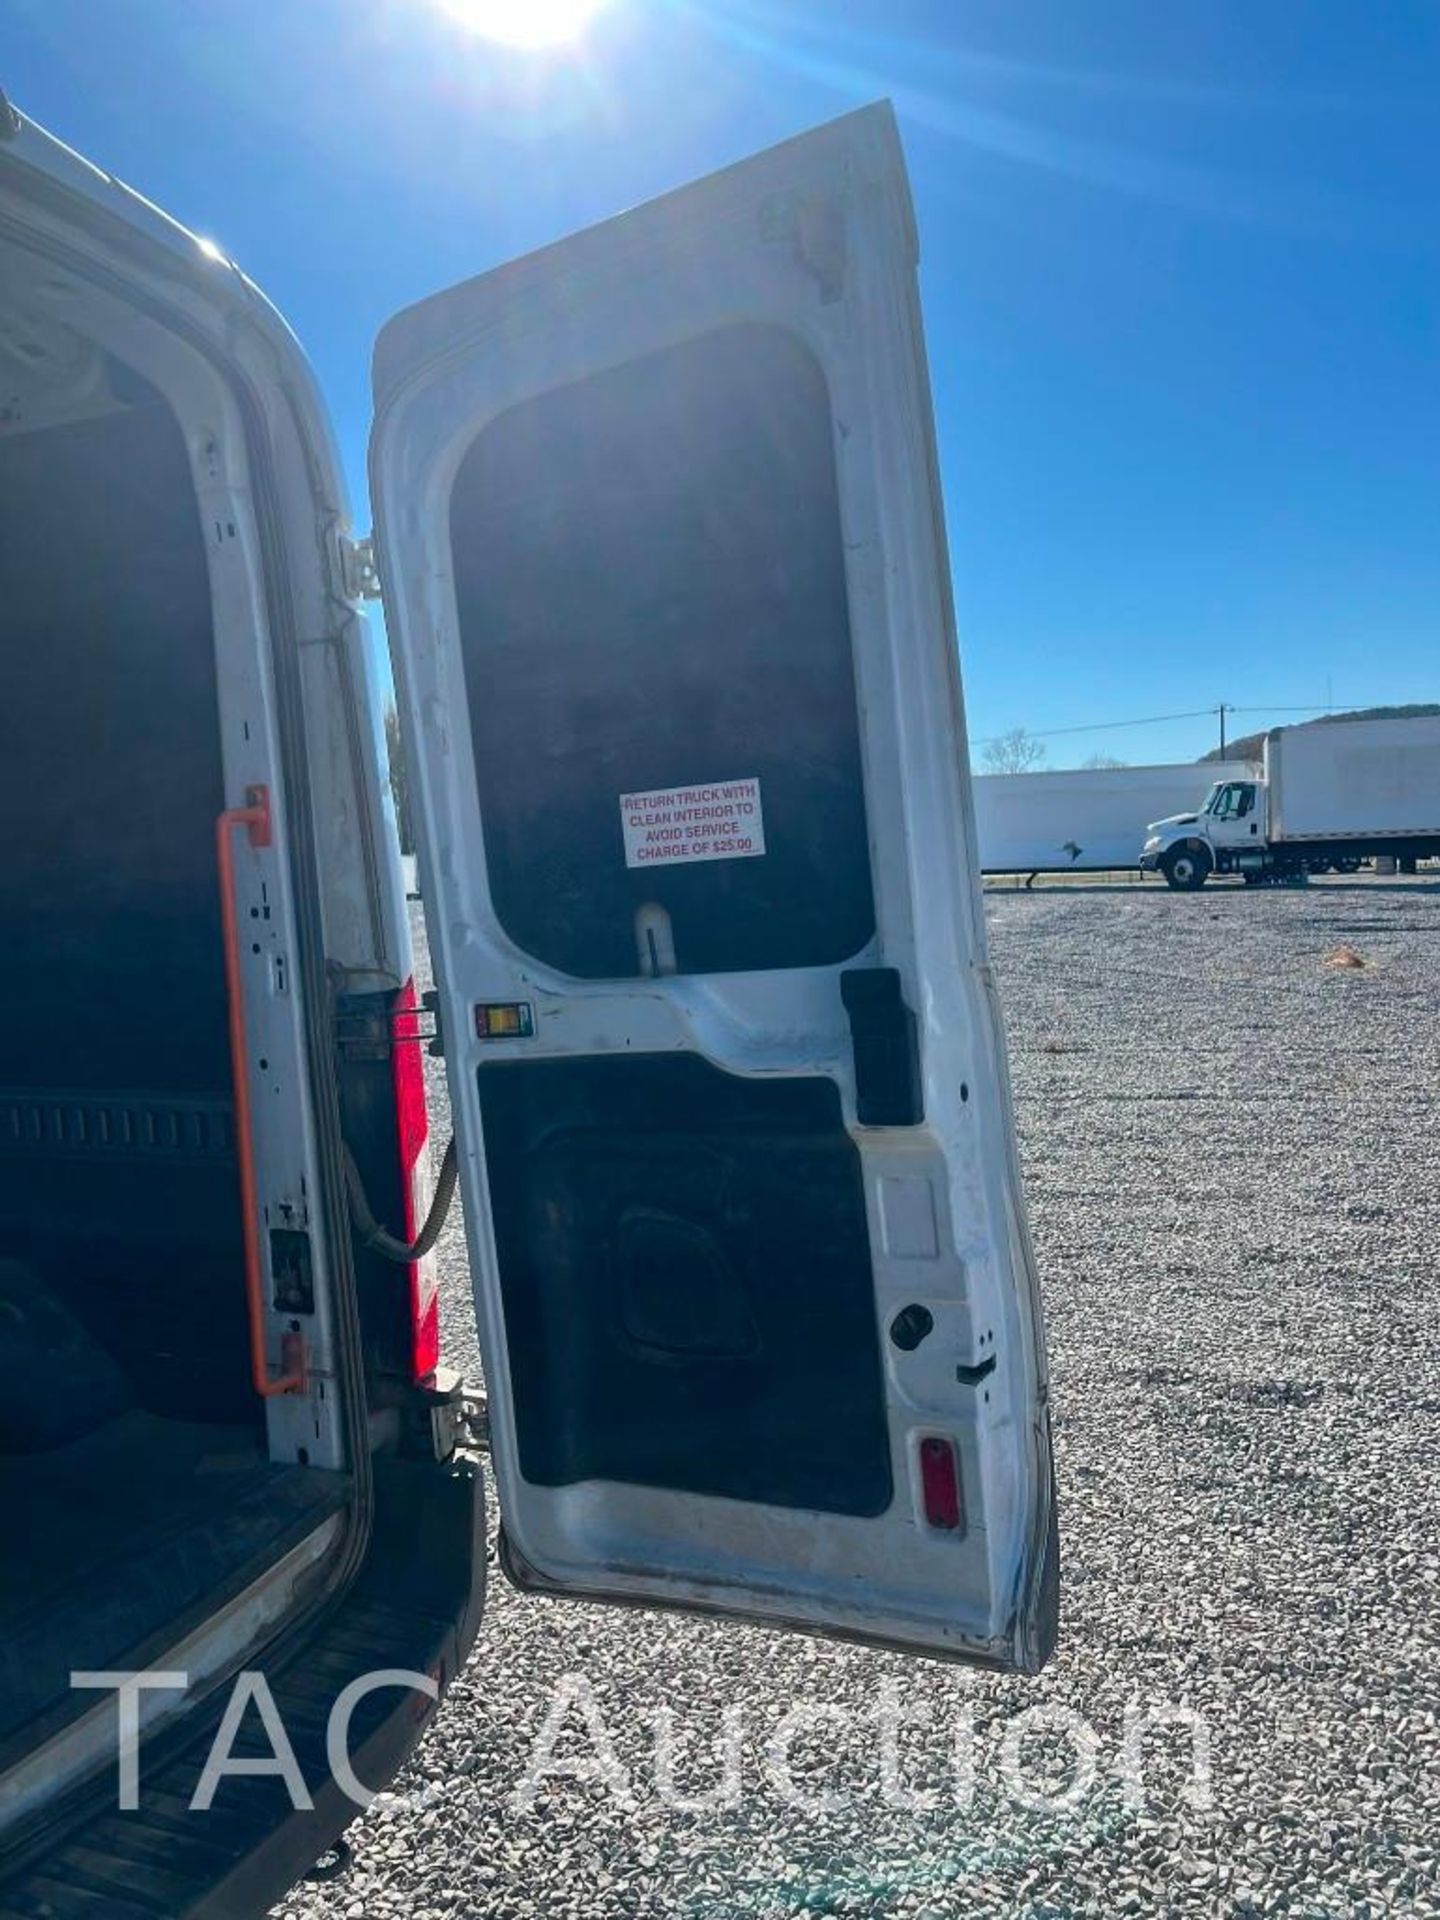 2019 Ford Transit 150 Cargo Van - Image 6 of 22